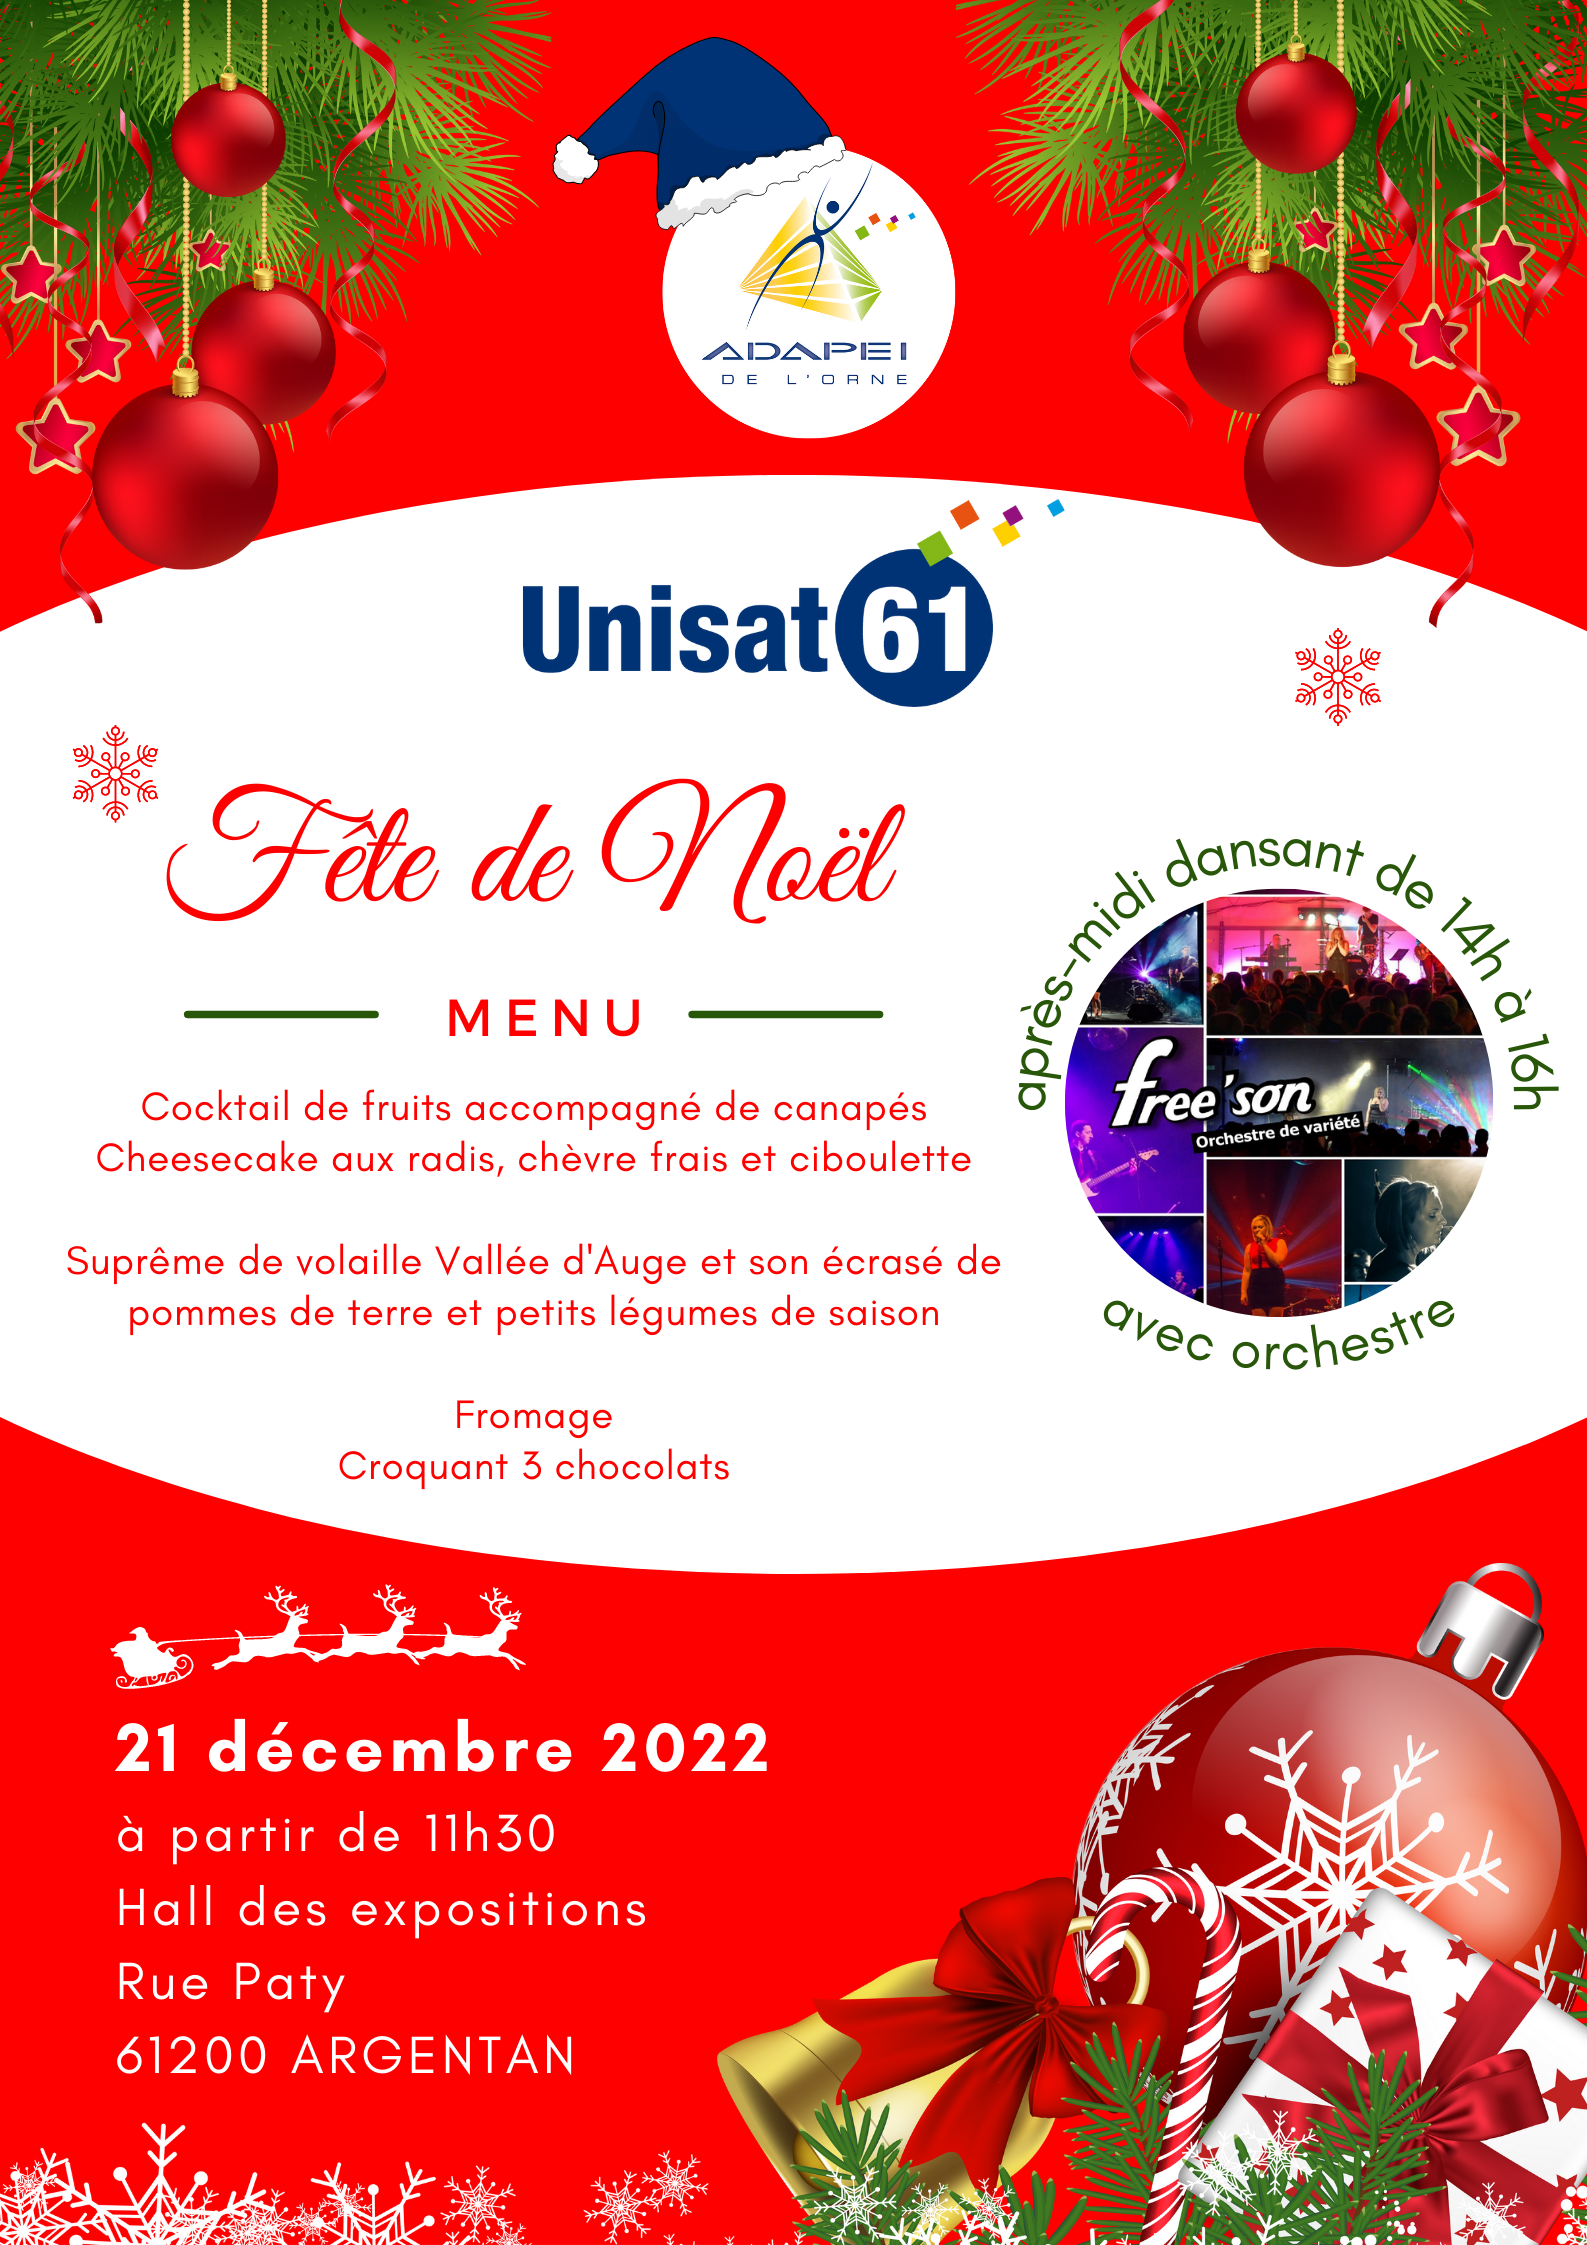 Grand rassemblement de Noël pour UNISAT 61 au Hall des Expositions à Argentan le 21 décembre 2022